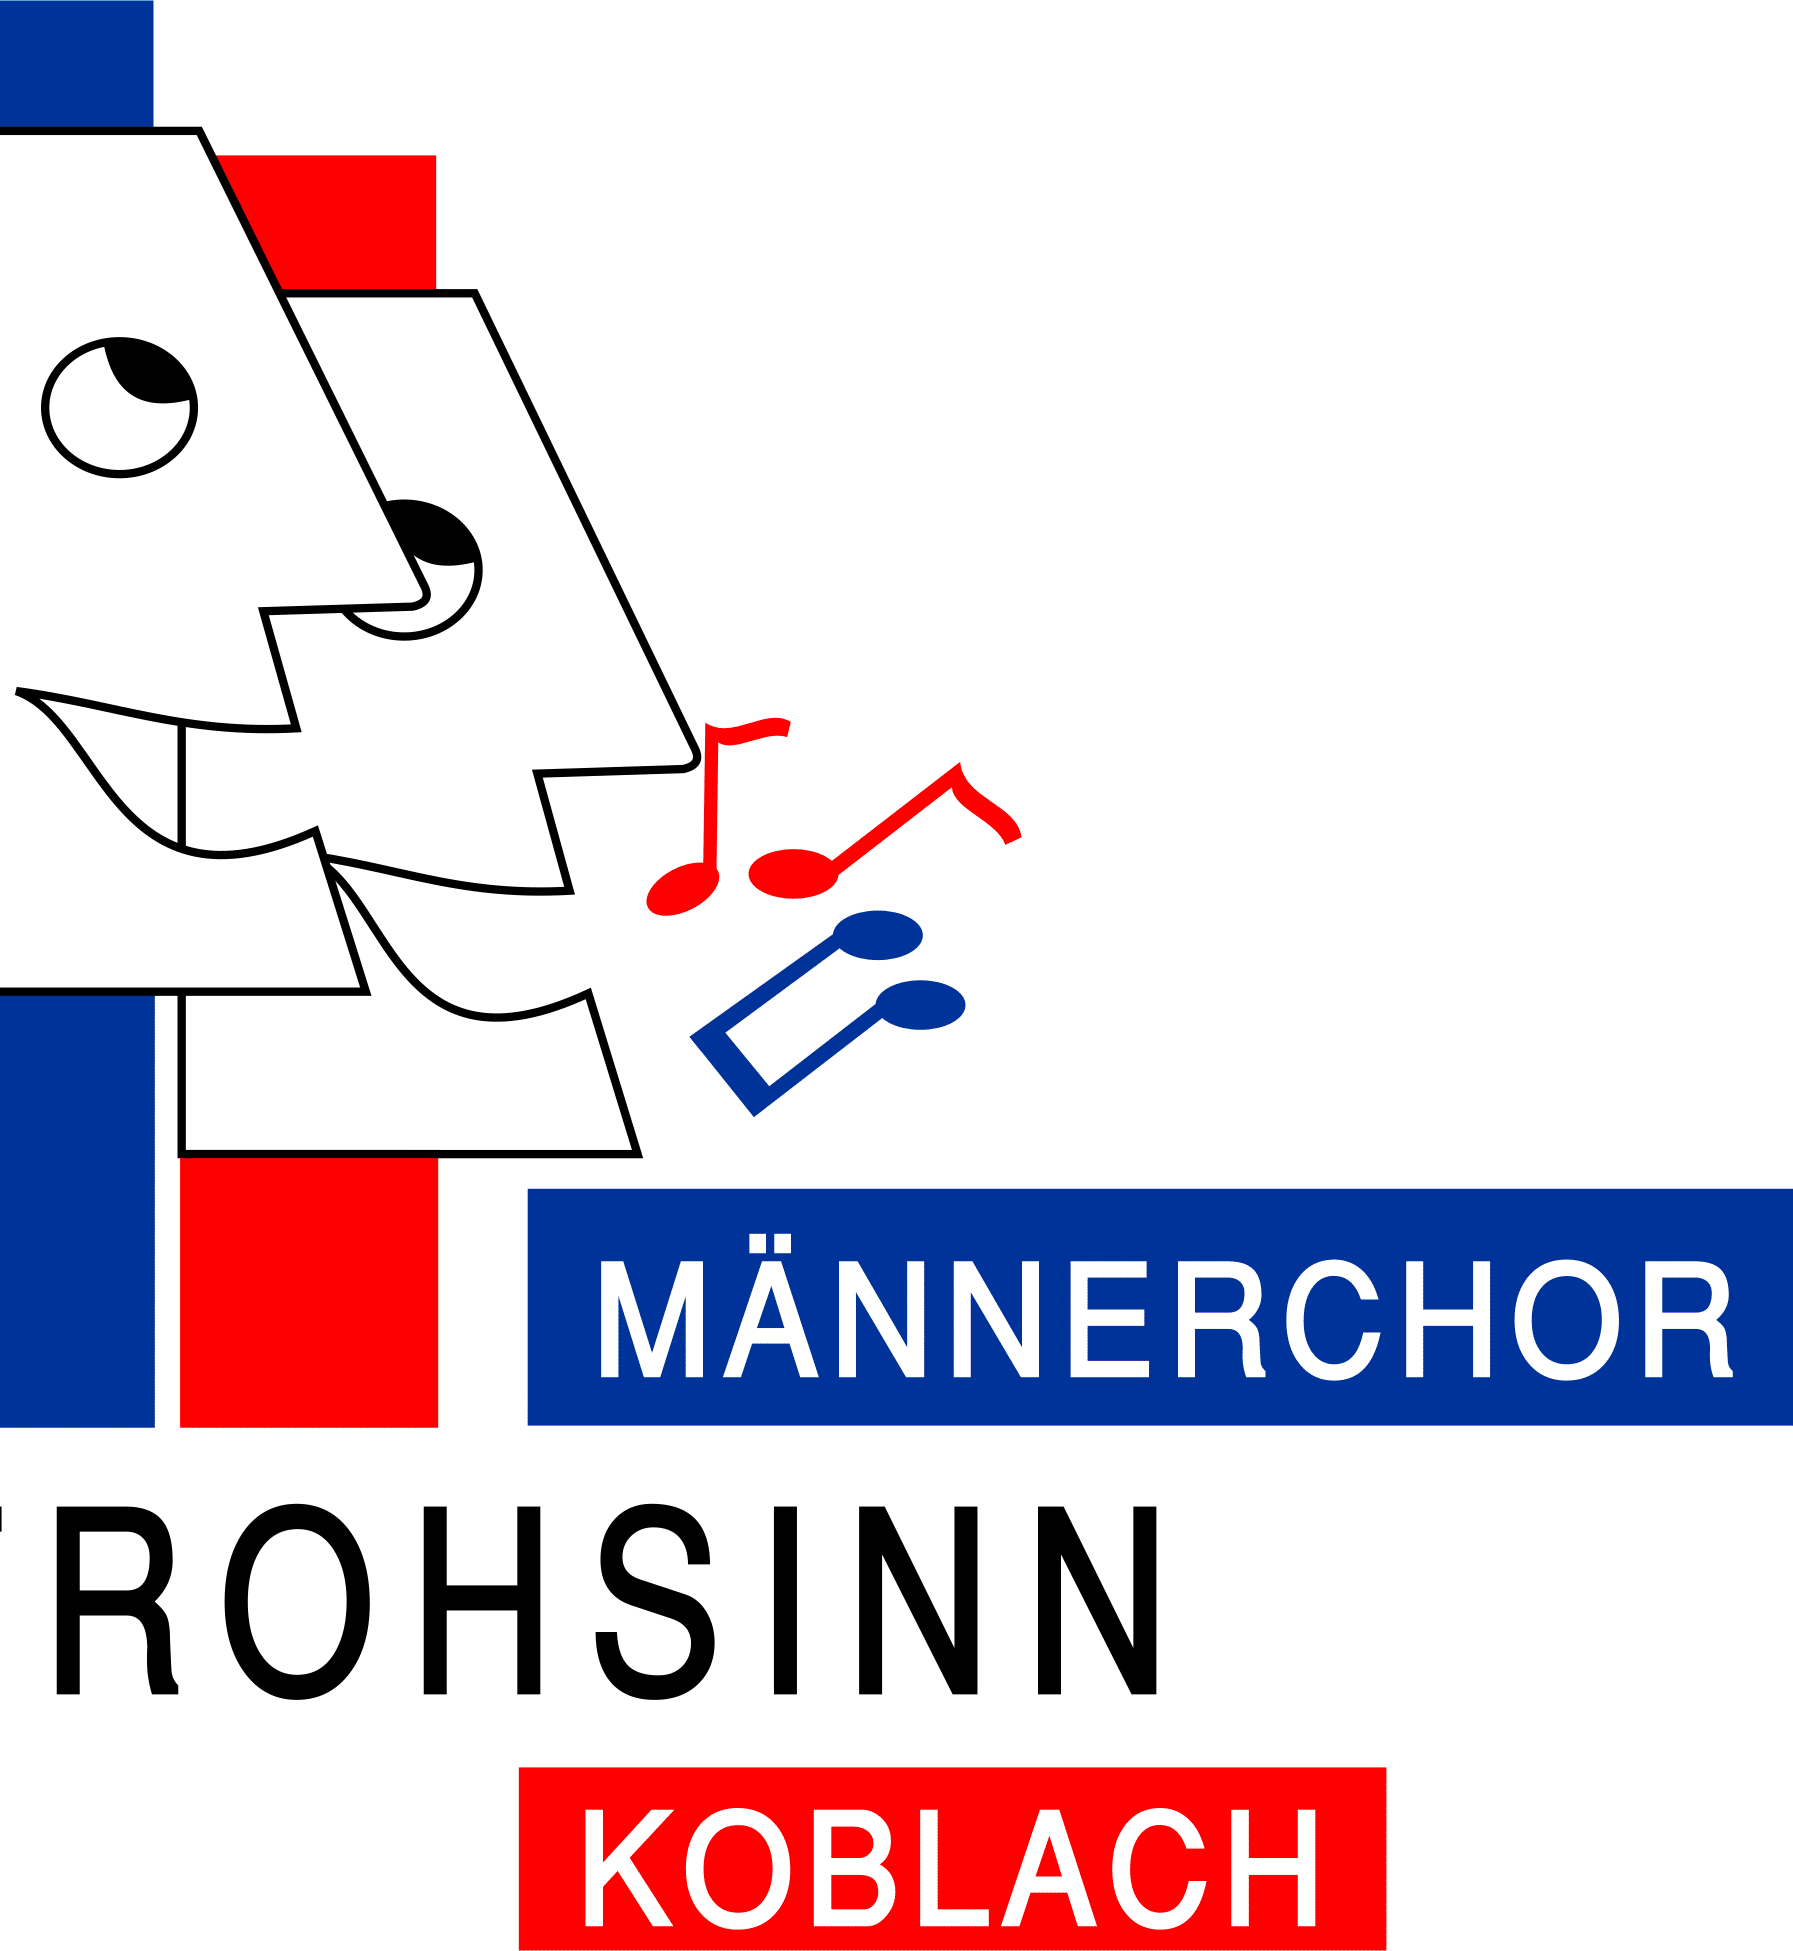 Männerchor Frohsinn Koblach